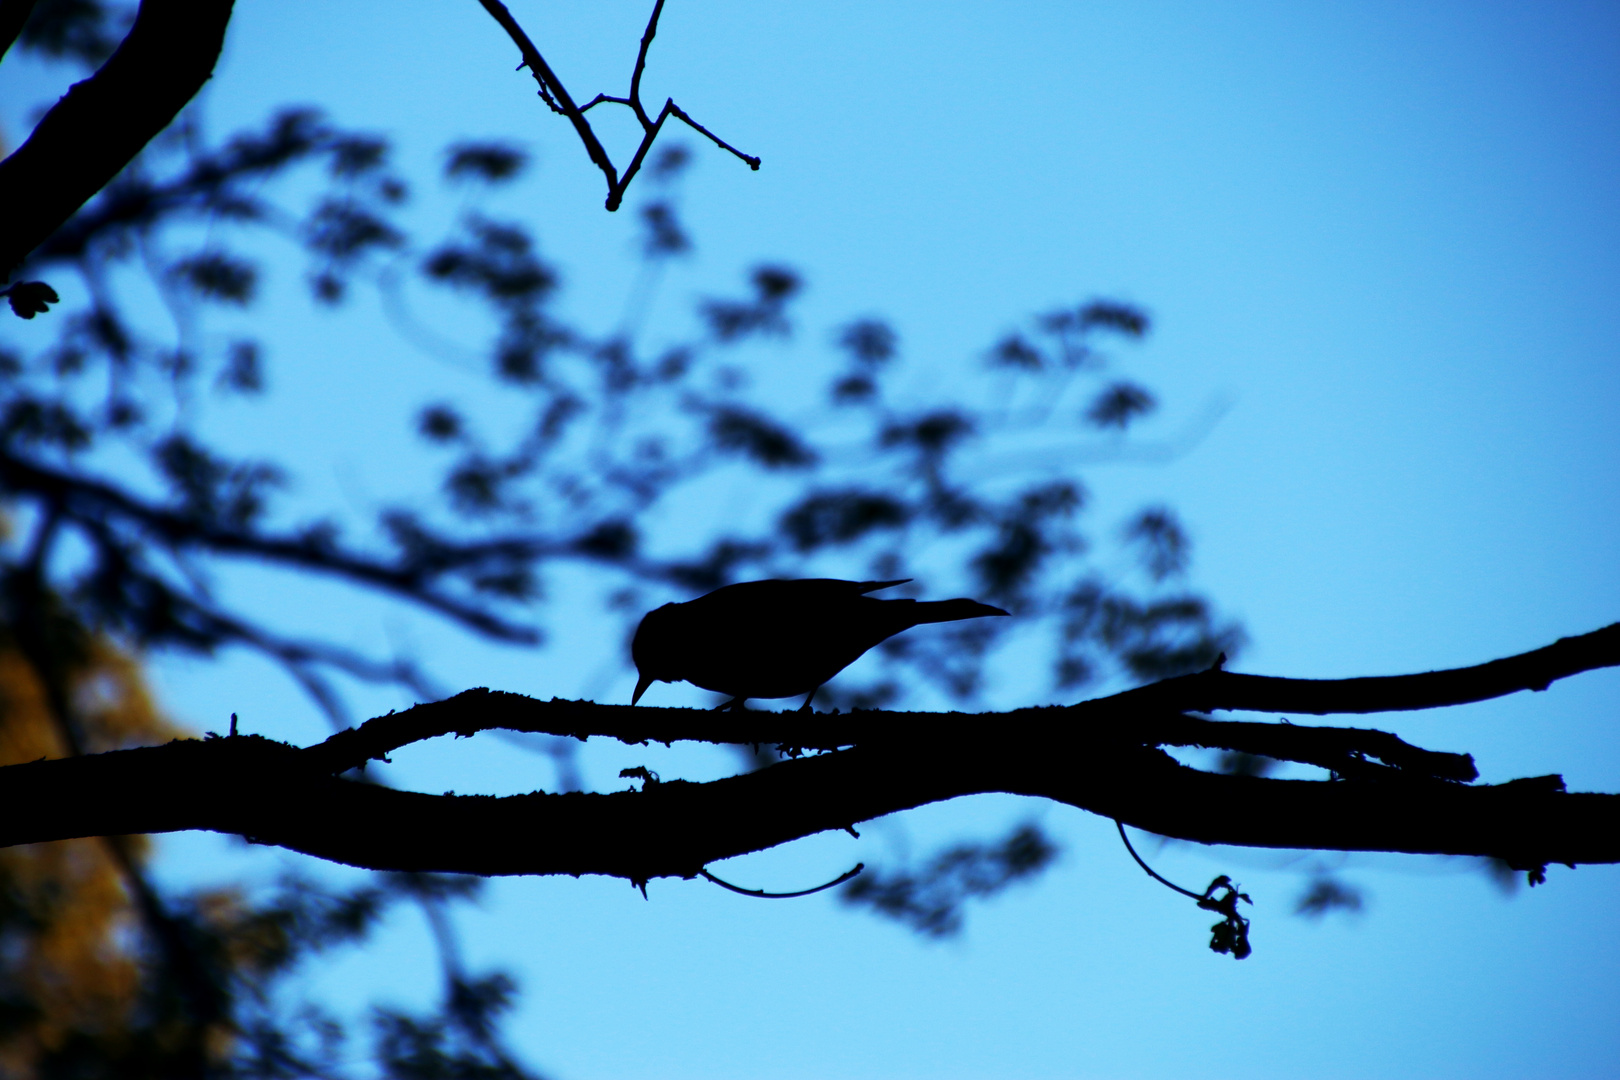 Morning starling